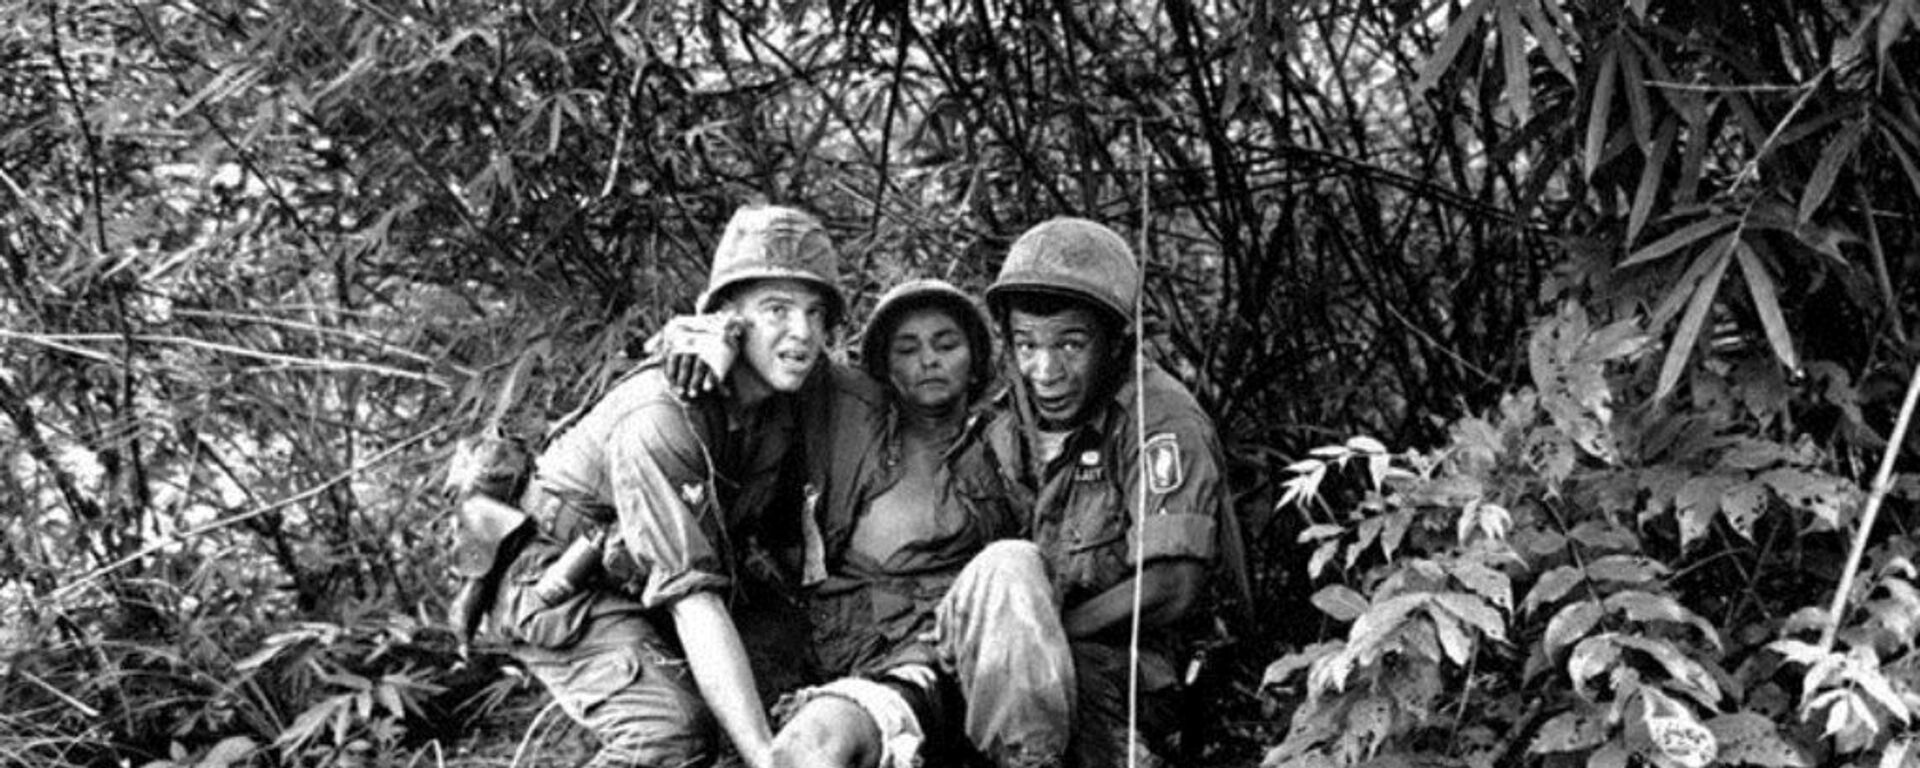 Lính Mỹ cứu giúp nhau khi bị thương - Sputnik Việt Nam, 1920, 08.02.2018